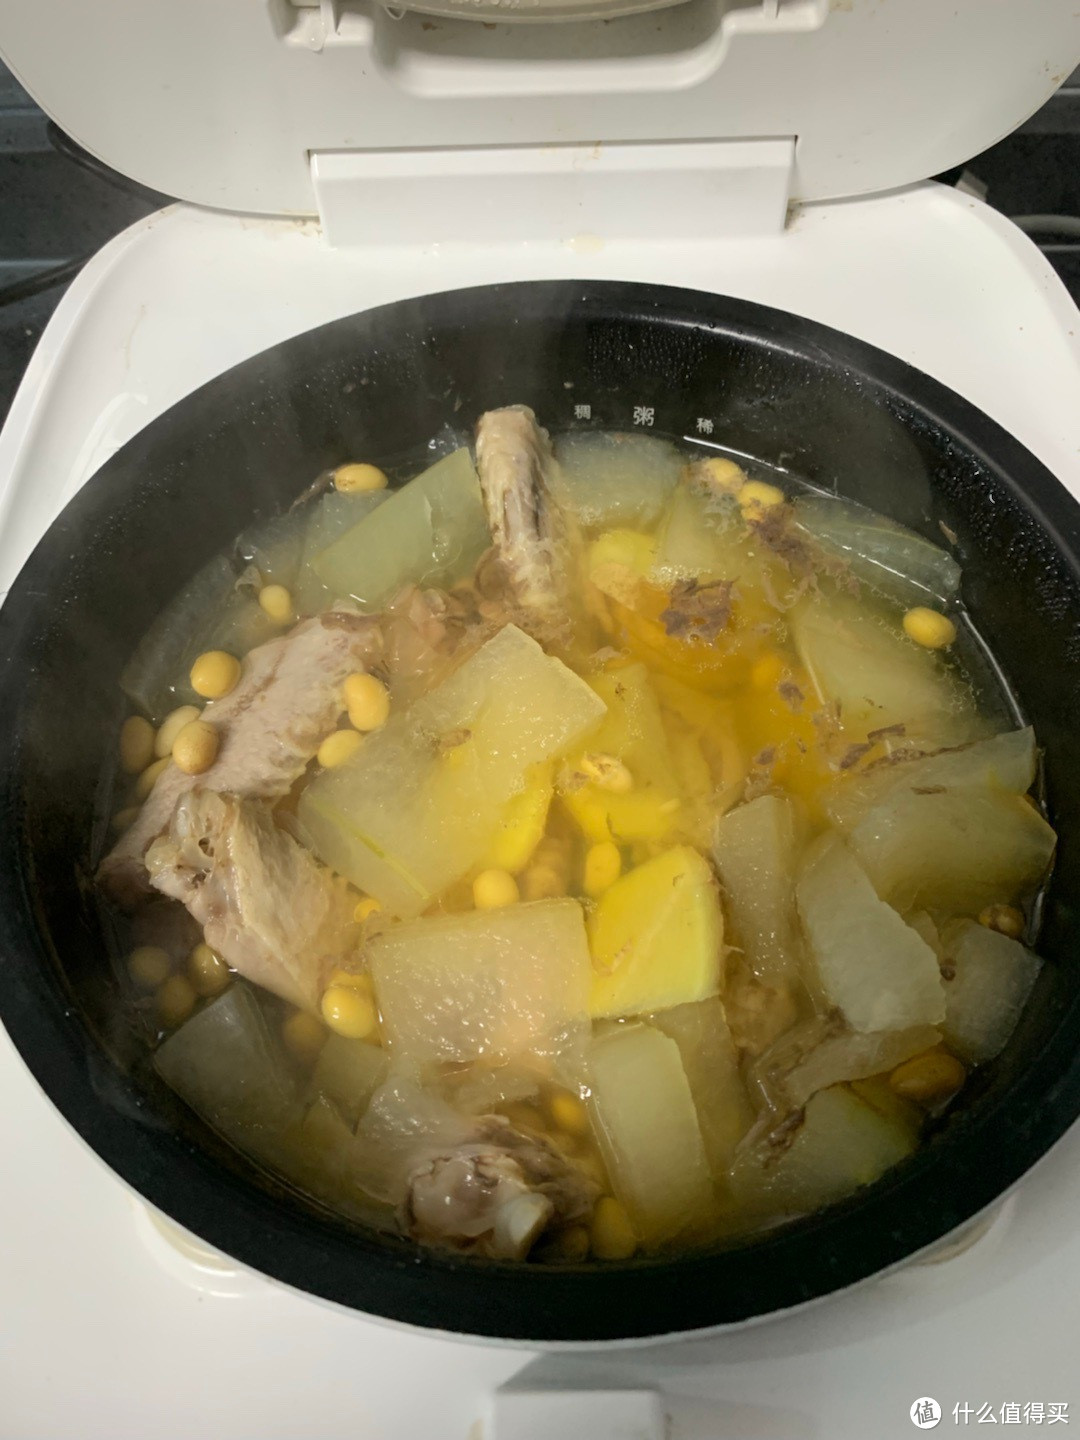 其实煲汤也一样就是加多点水 这个鸭翅冬瓜 1小时 